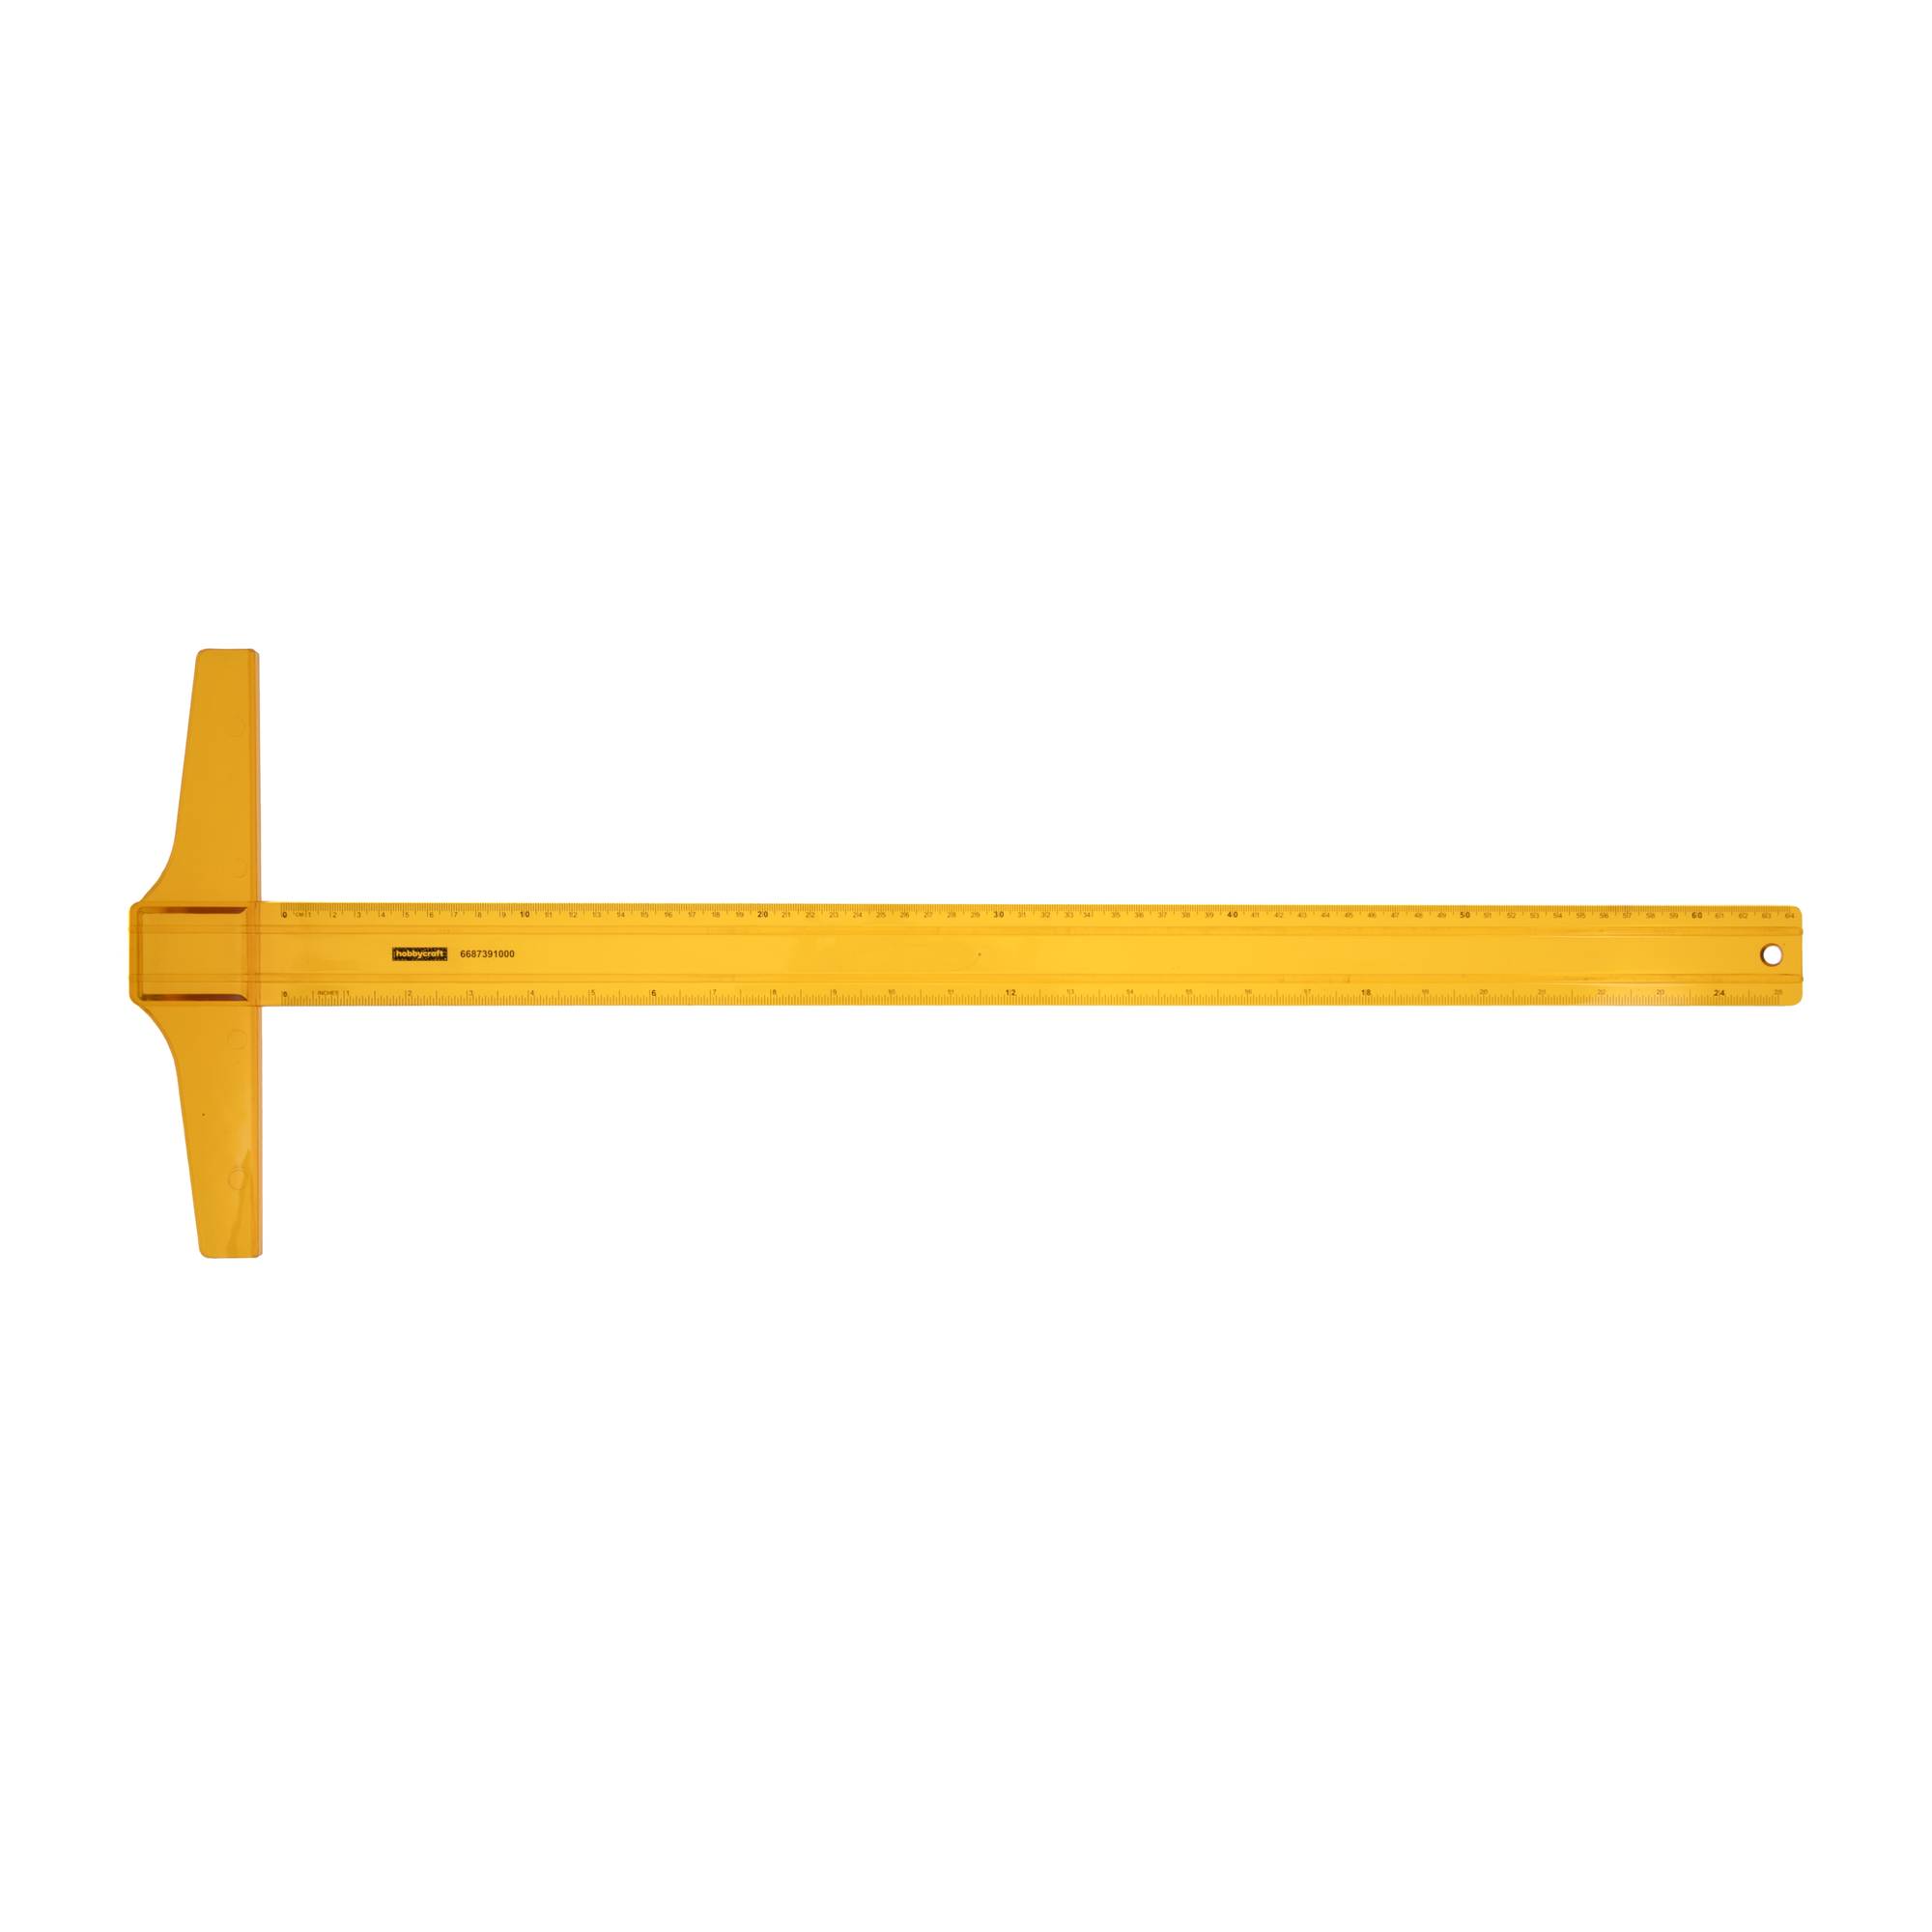 Orange T-Square Ruler 60cm